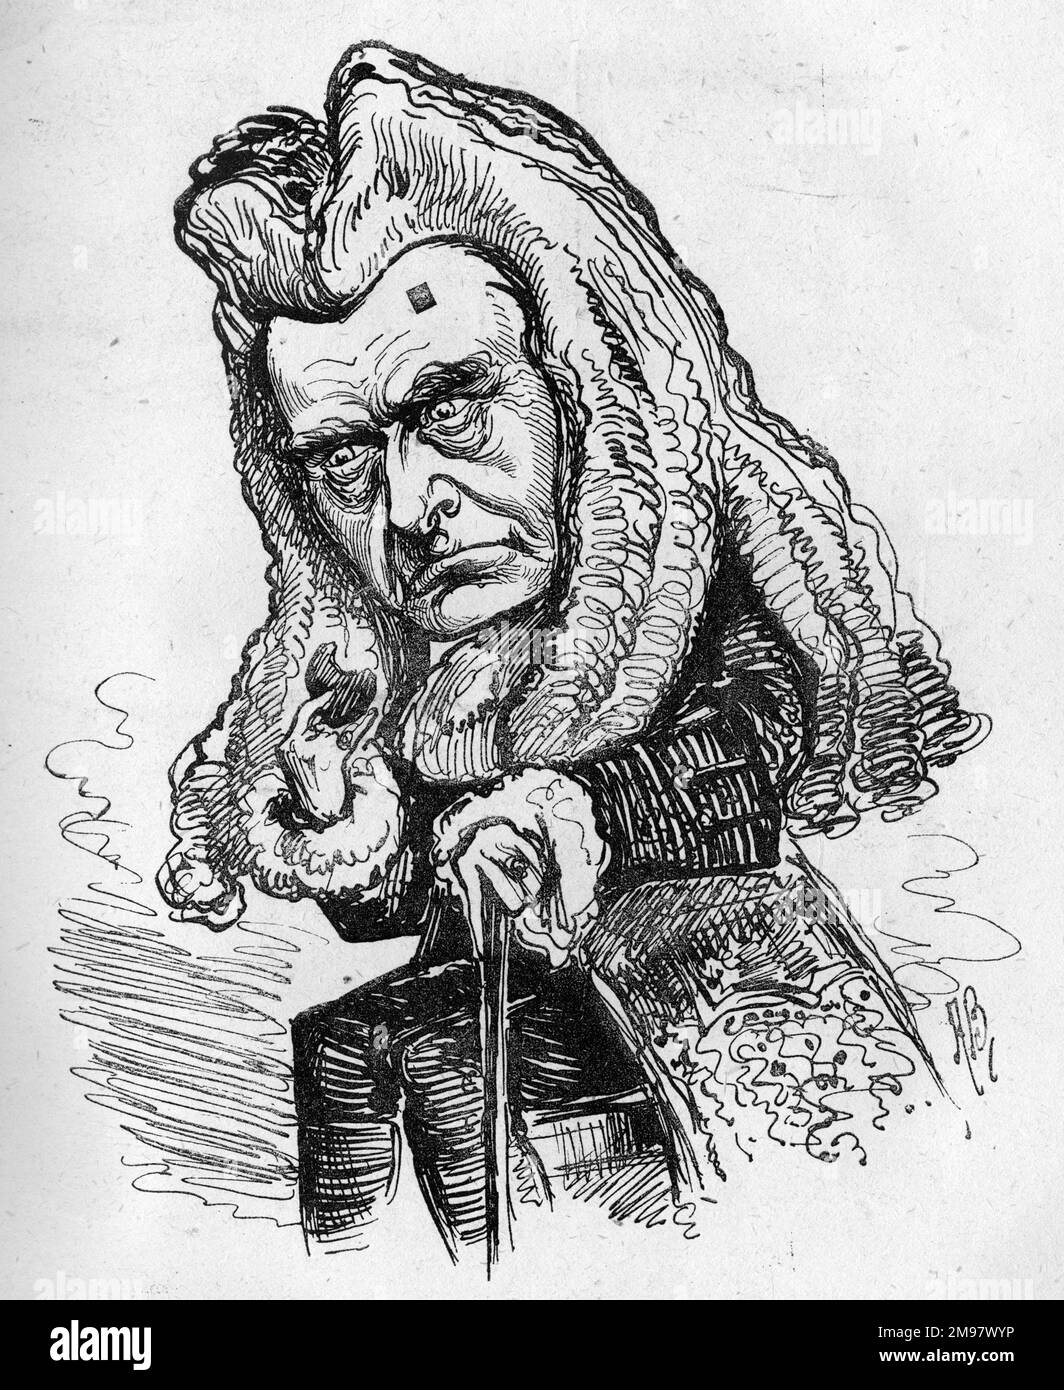 Caricatura de Arthur Cecil (1843-1896), actor, comediante, dramaturgo y director de teatro inglés. Visto aquí como Colley Cibber en una producción de máscaras y rostros, escrita en 1852 por Charles Reade y Tom Taylor. Foto de stock